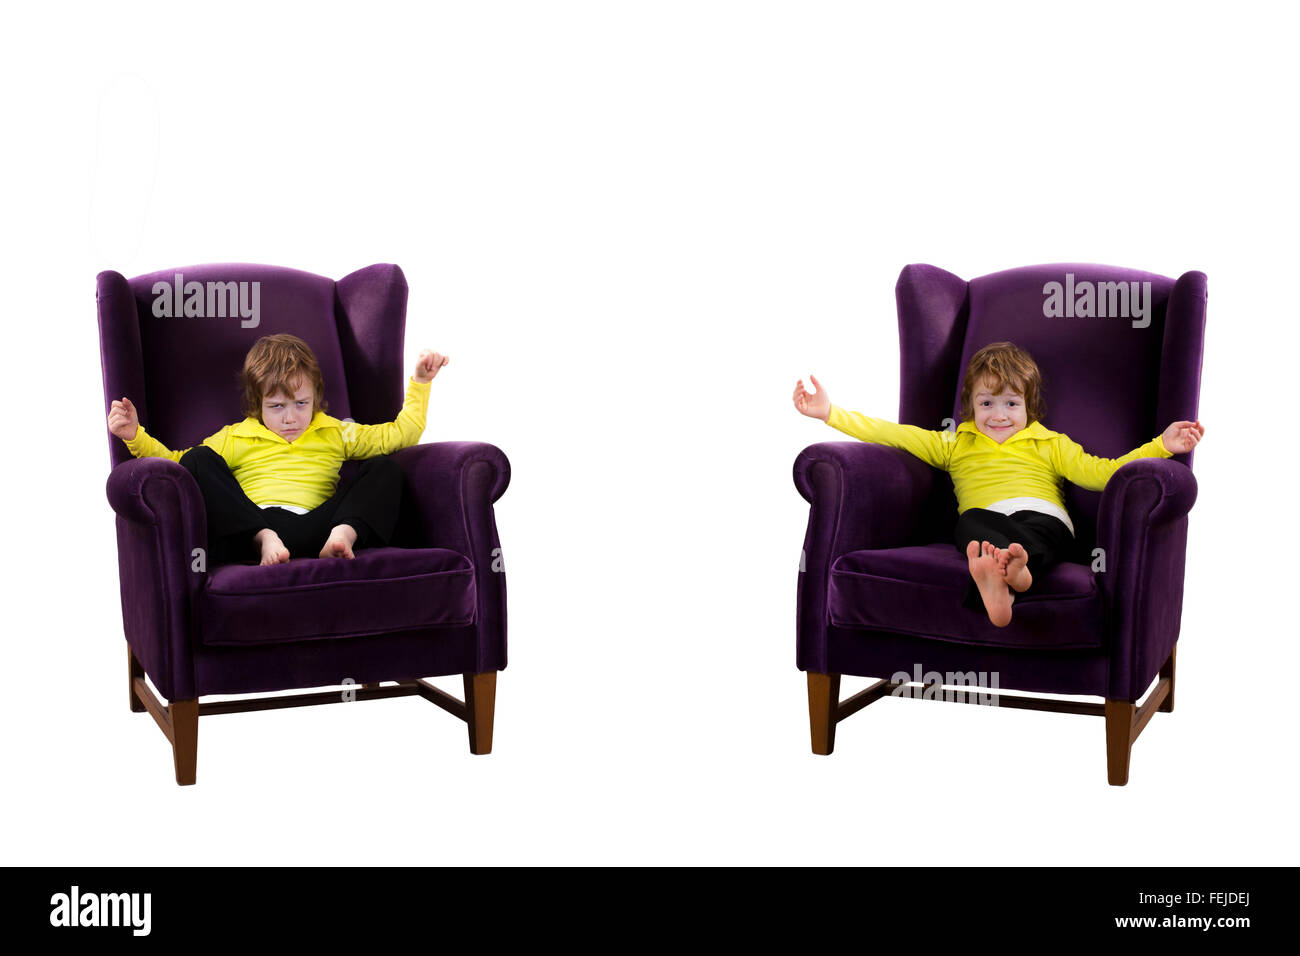 Heureux, en colère contre les cheveux rouges garçon assis sur les deux fauteuils violets Banque D'Images